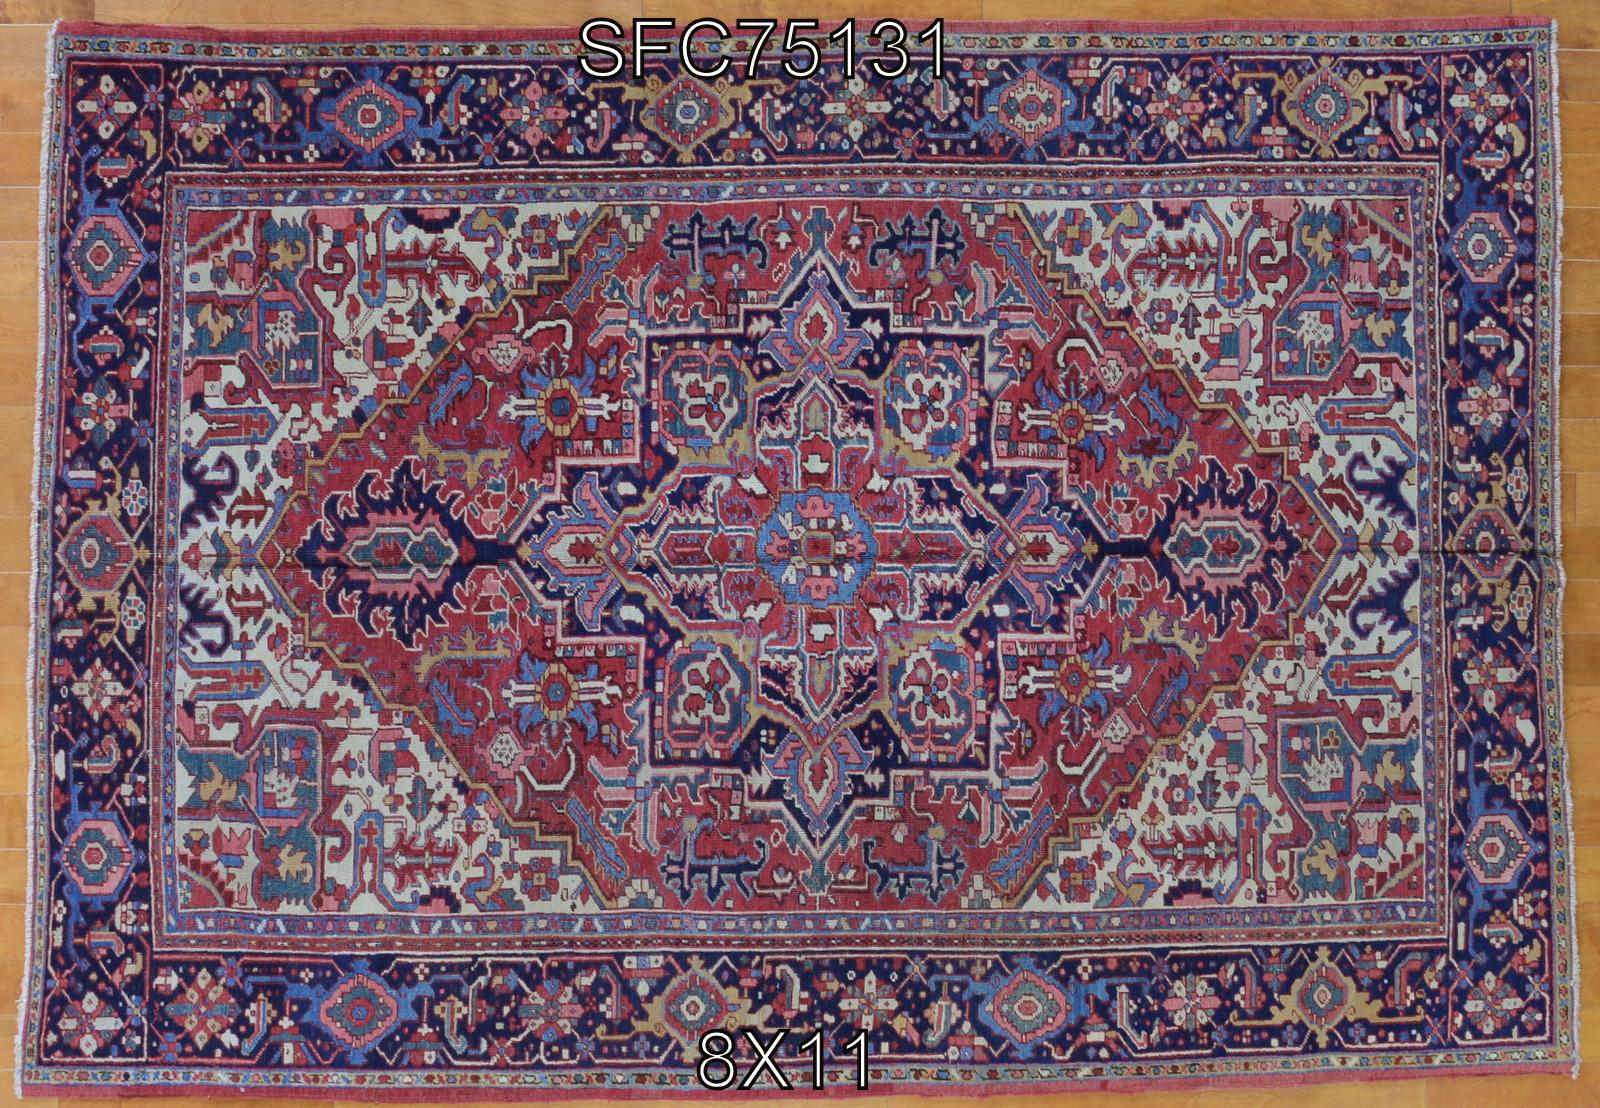 Antique Heriz rug. Measures: 8' x 11'.